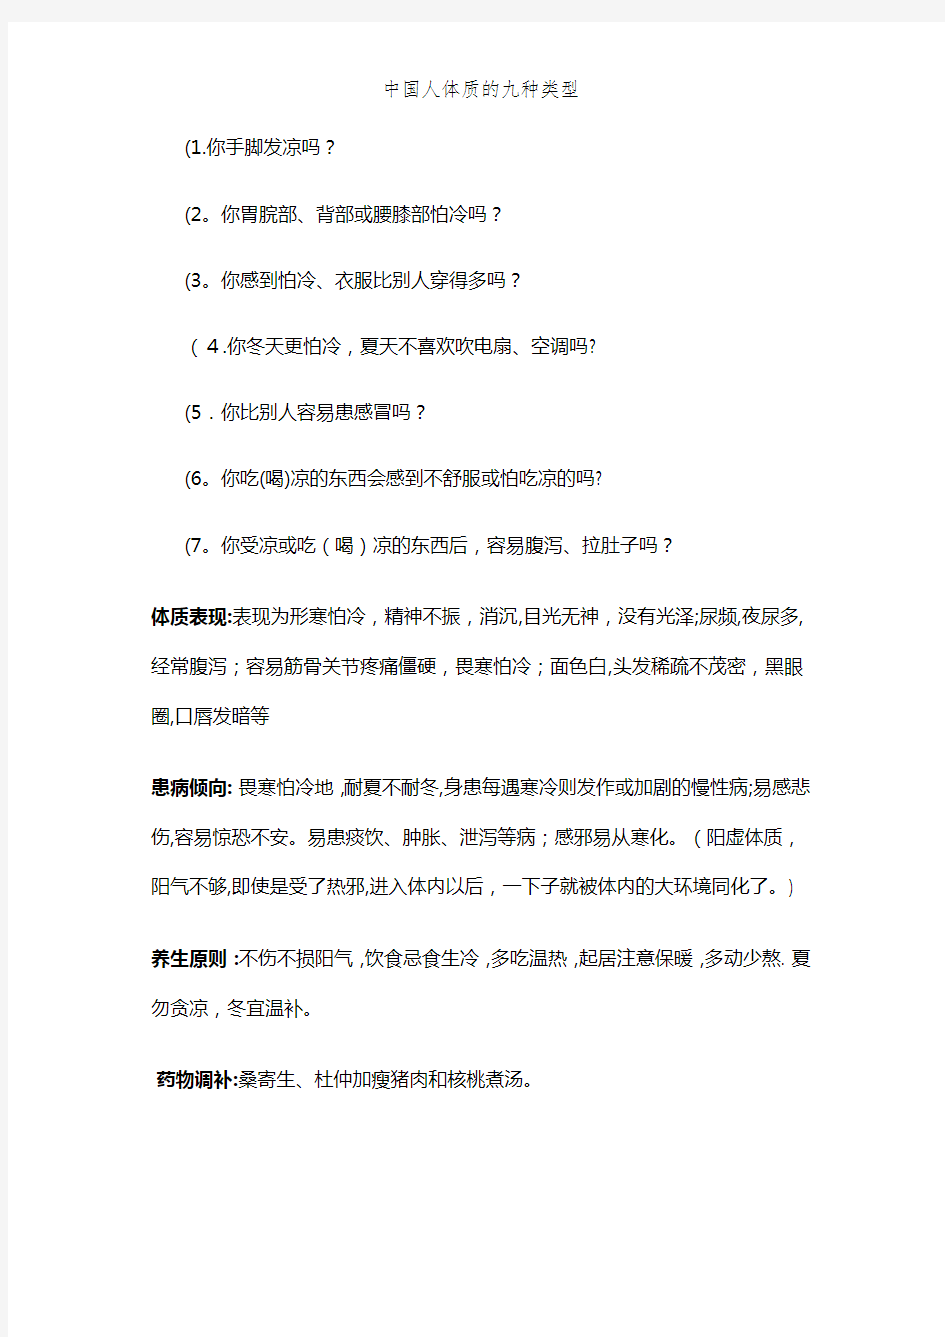 中国人体质的九种类型 (2)